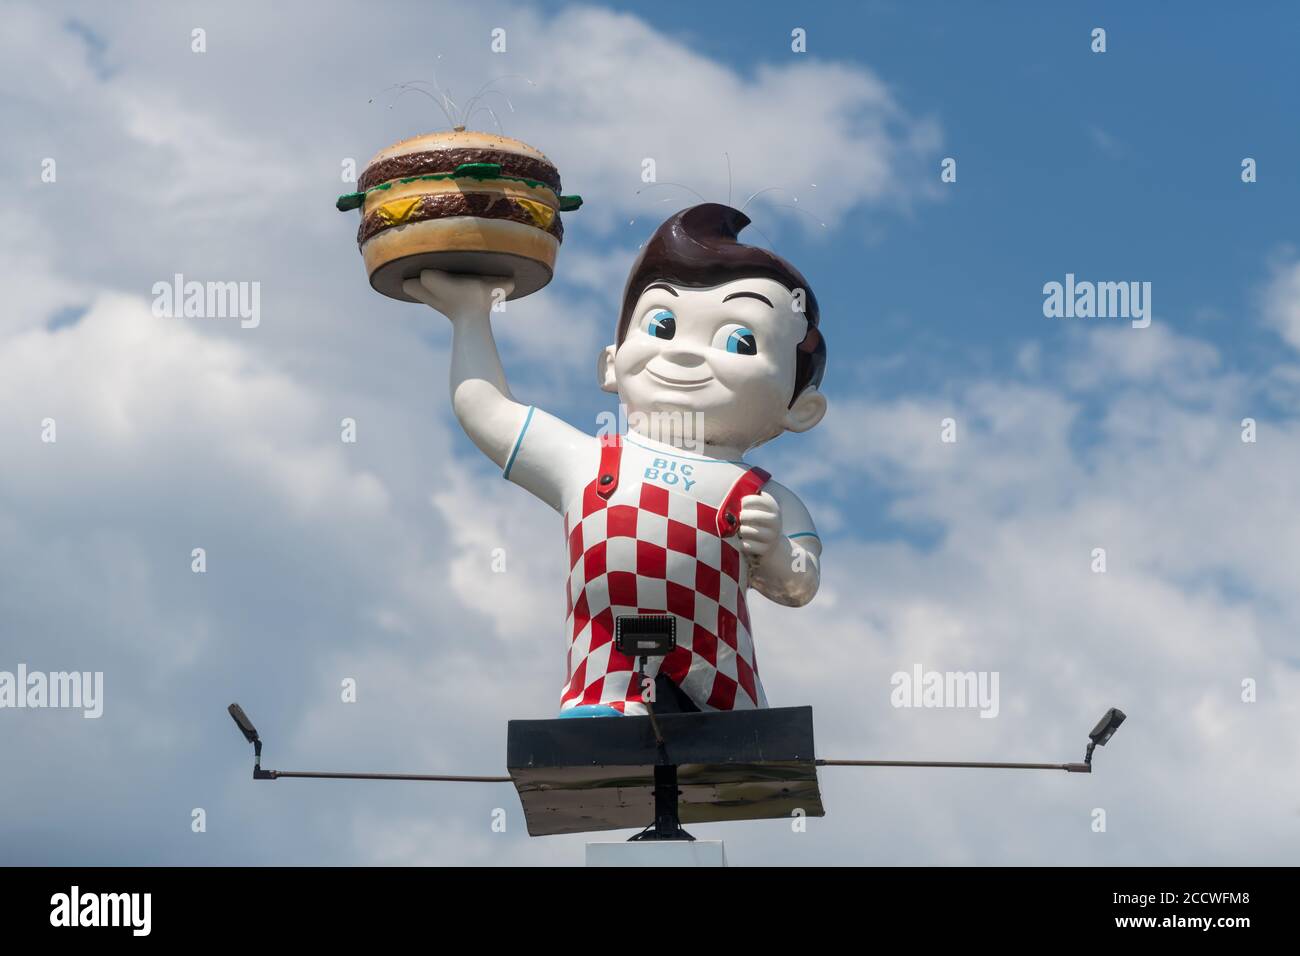 Manistique, MI - 9 luglio 2020: Una mascotte Big Boy che tiene il suo famoso hamburger che ha reso famosa la franchising. Foto Stock